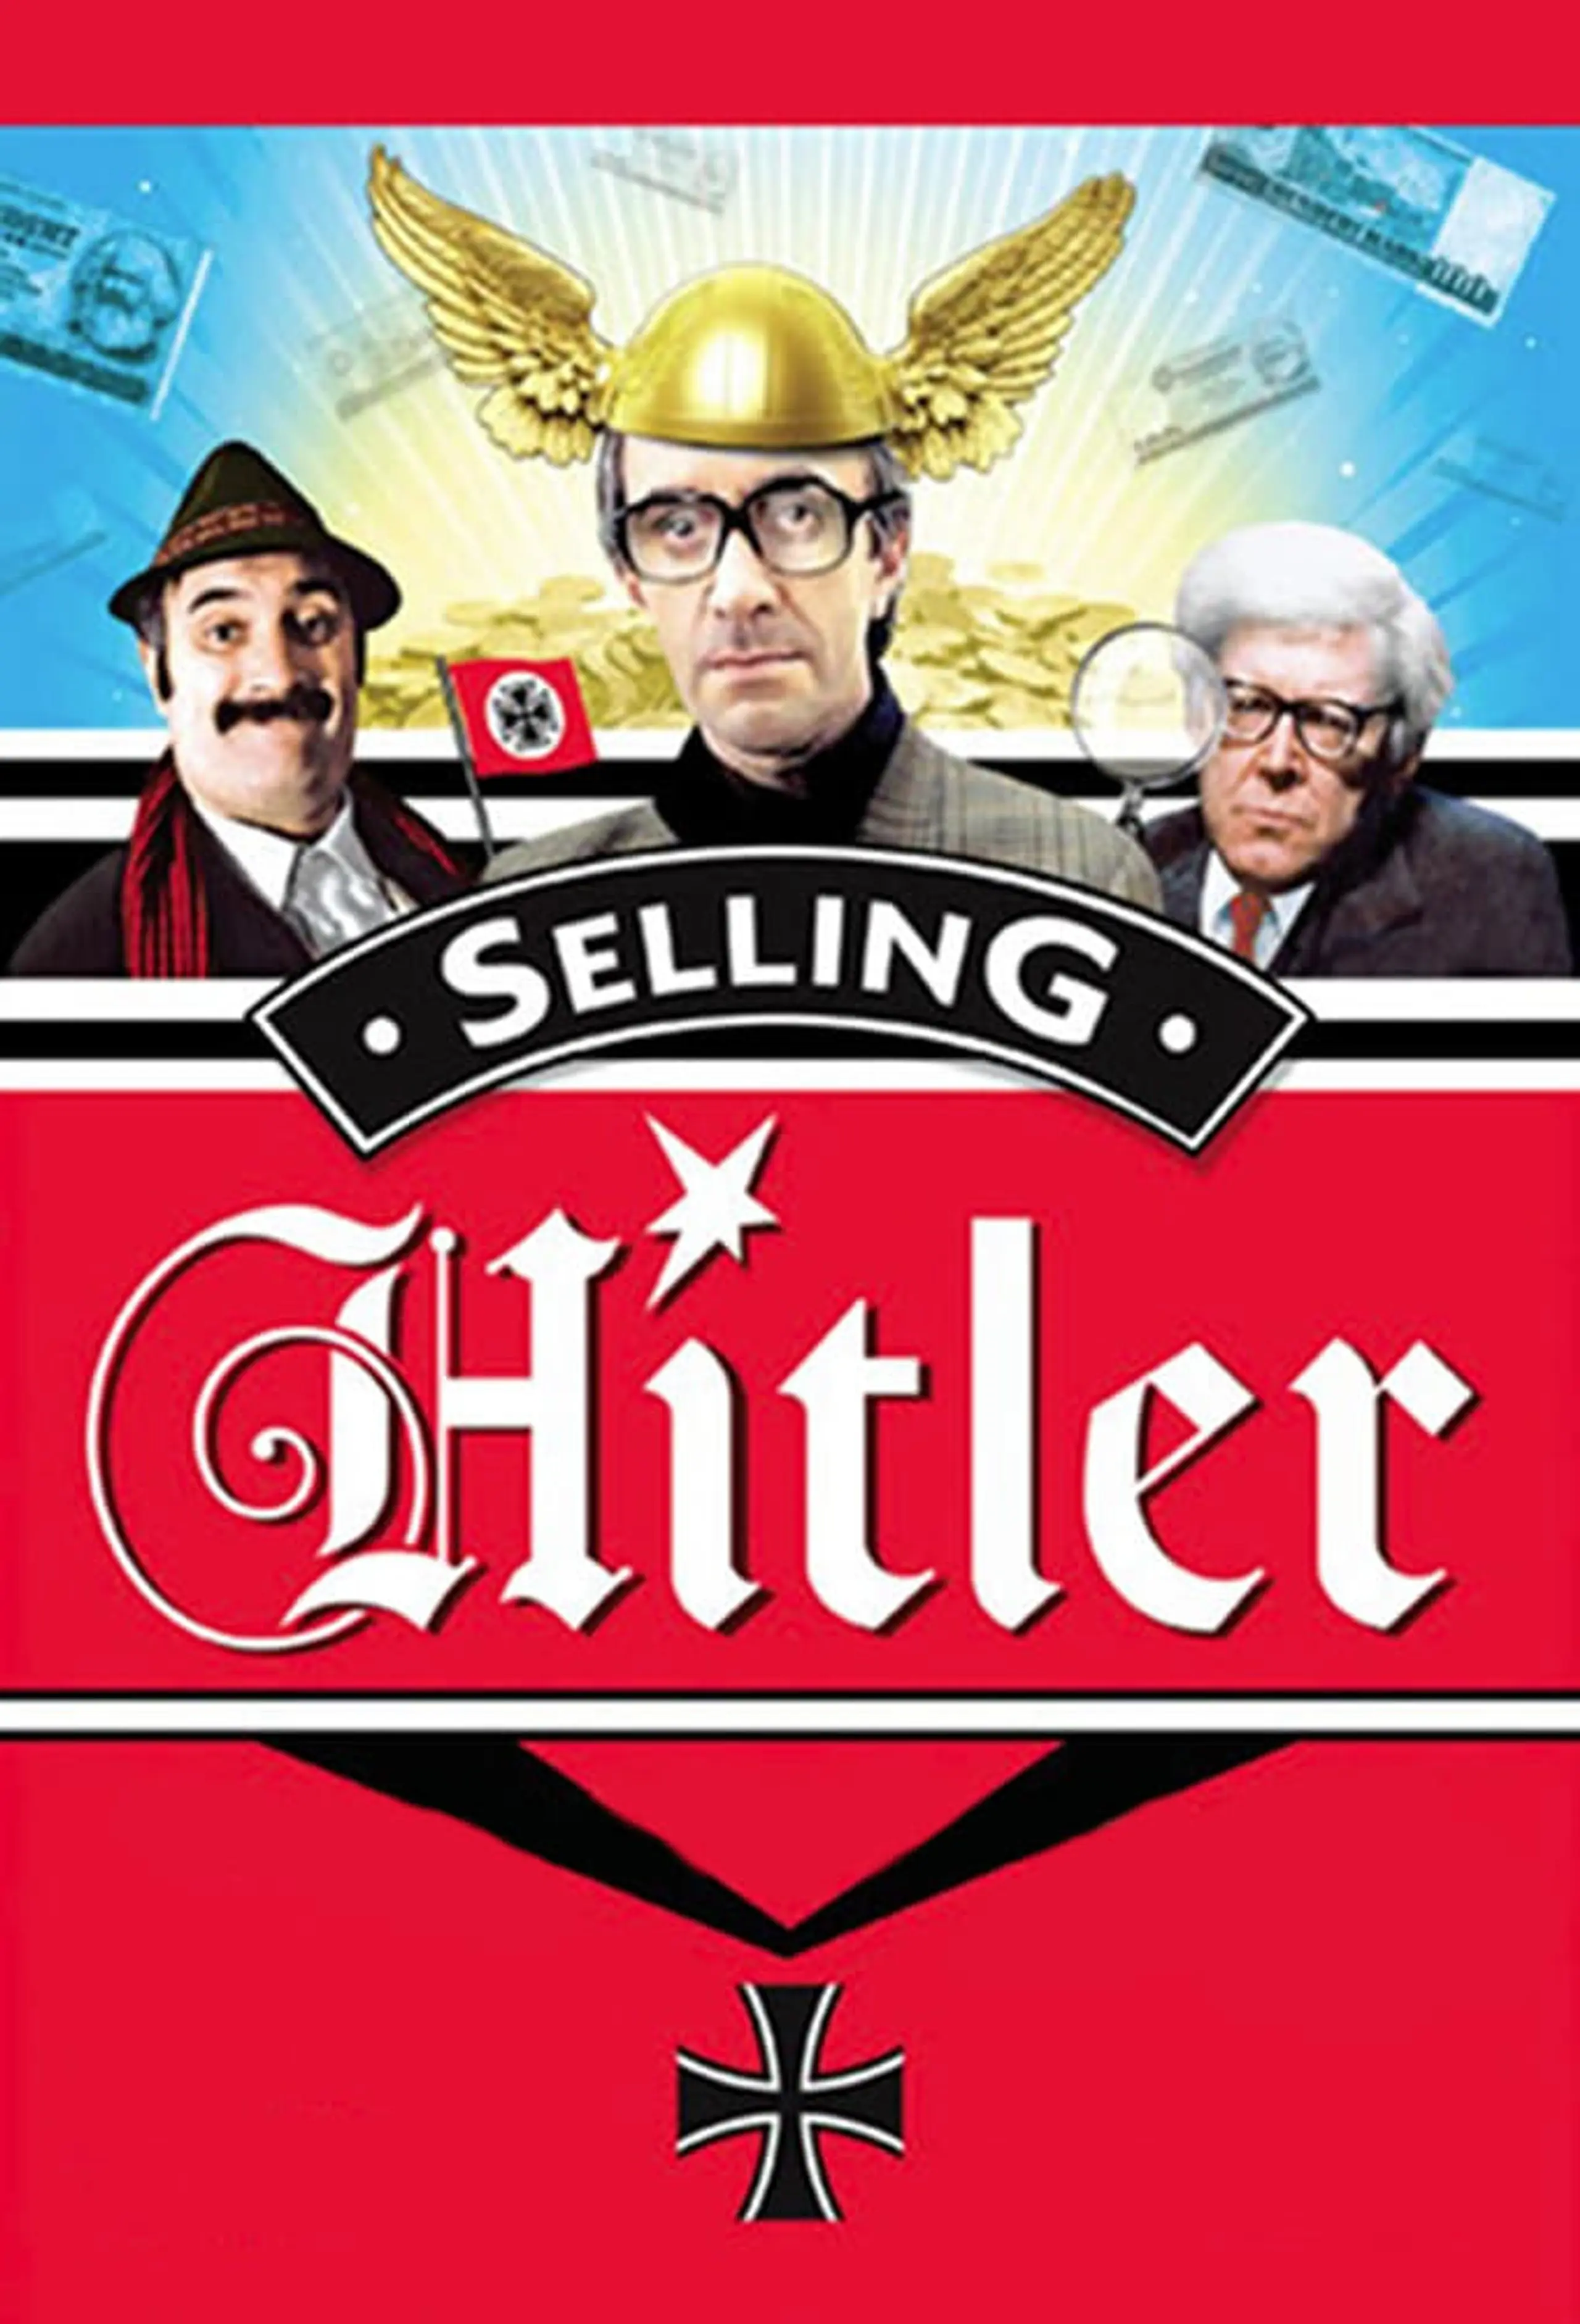 Hitler zu verkaufen